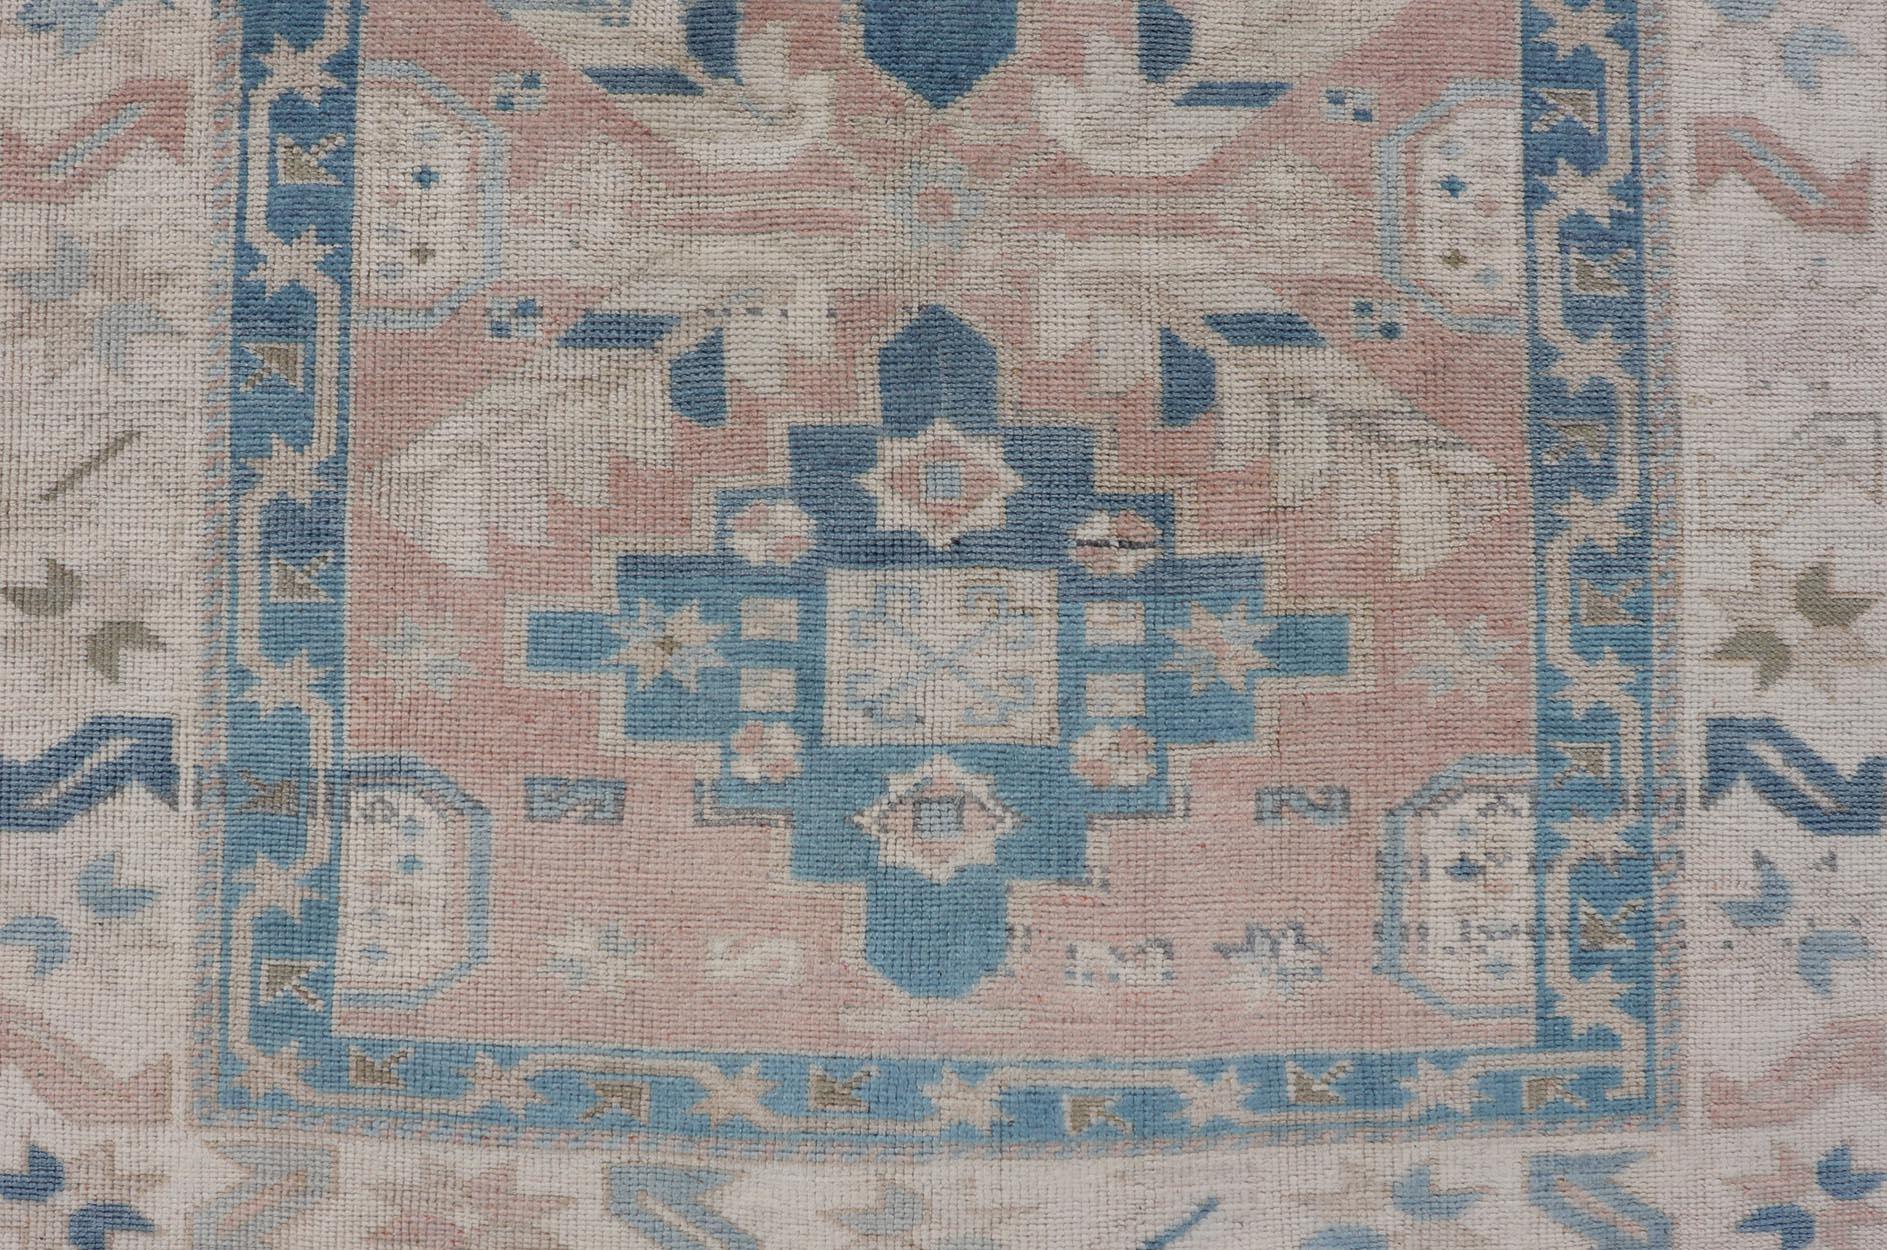 Türkischer Oushak Vintage-Teppich aus der Türkei in verschiedenen Blau-, Lachs-, Beige- und Naturtönen. Keivan Woven Arts / Teppich EN-178331, Herkunftsland / Art: Türkei / Oushak, um 1940

Maße: 4'5 x 6'8 

Dieser türkische Oushak-Teppich im